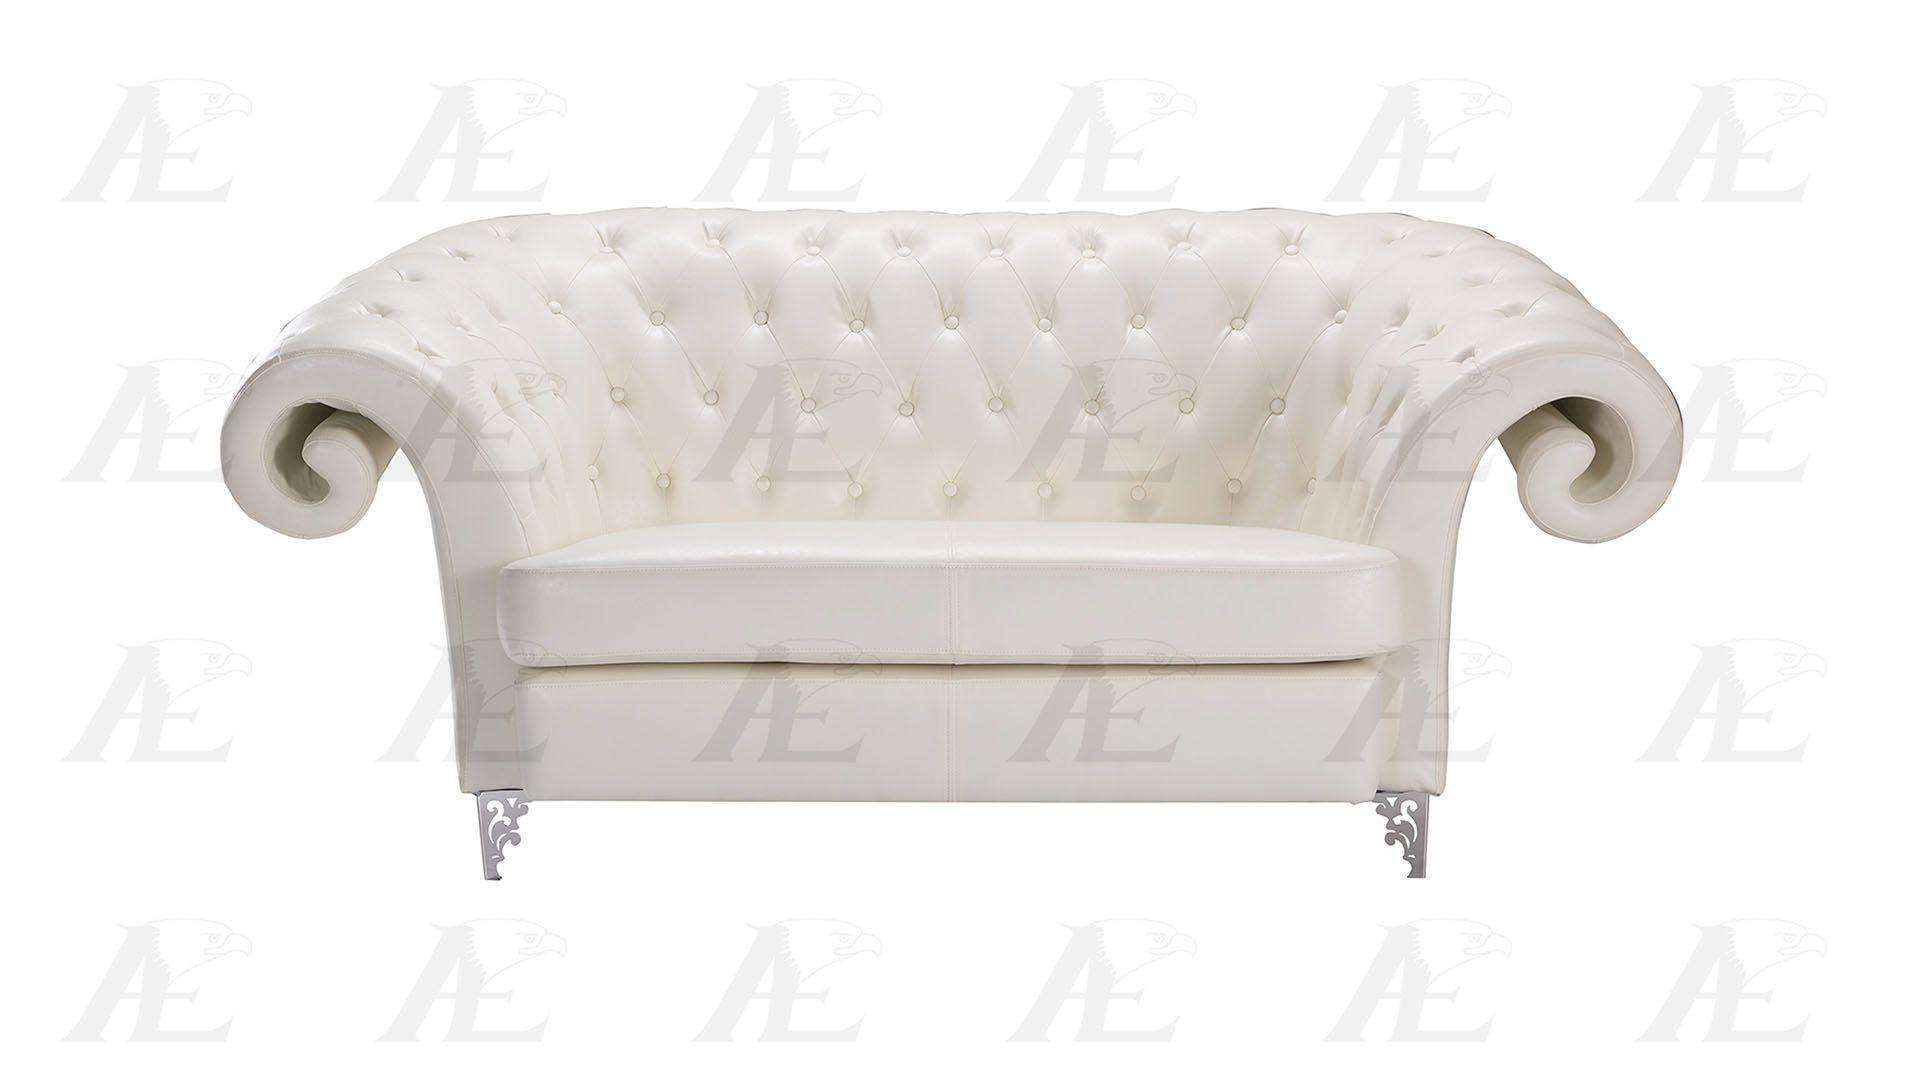 

    
AE508-IV-Set-2 American Eagle Furniture Sofa and Loveseat Set
